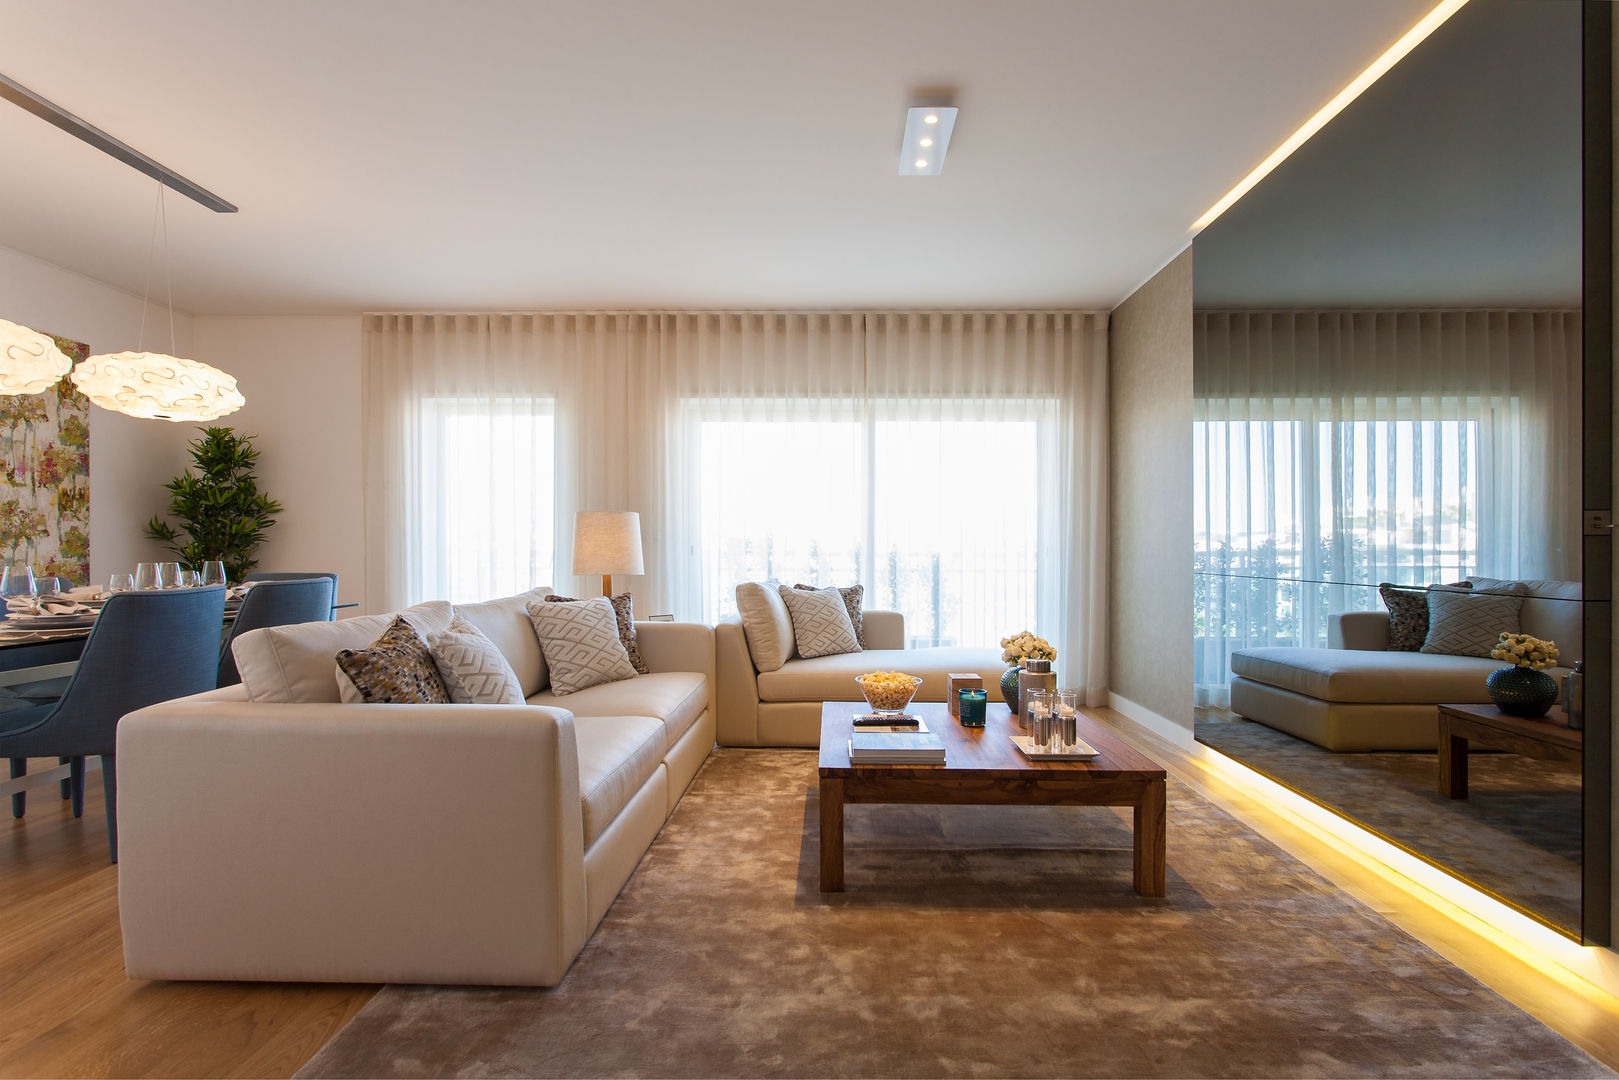 Andar Modelo - Oeiras, Traço Magenta - Design de Interiores Traço Magenta - Design de Interiores Modern living room